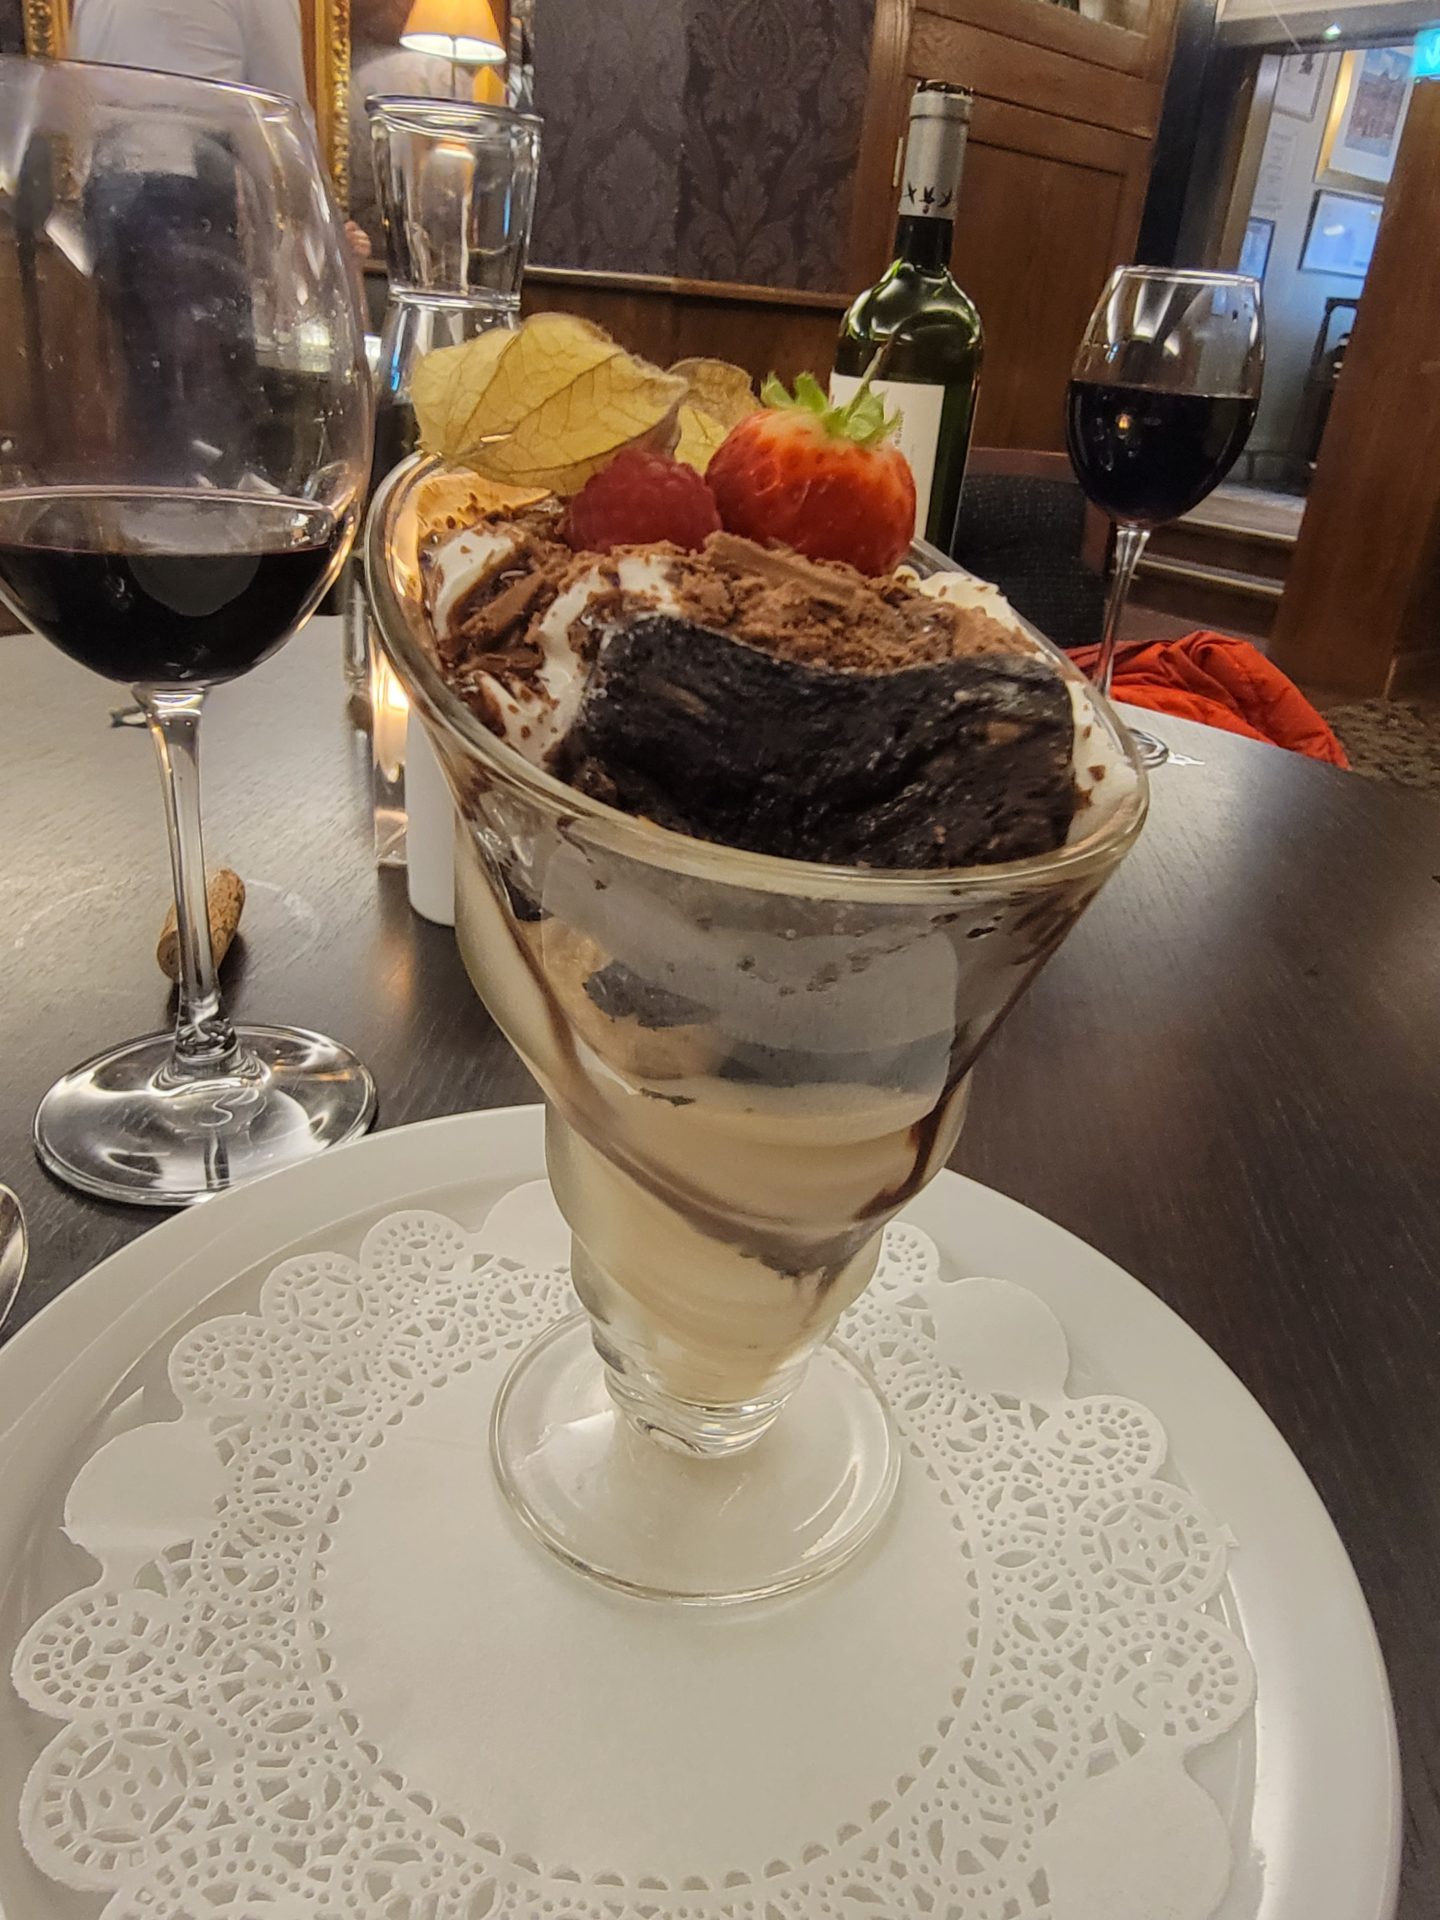 a dessert in a glass cup